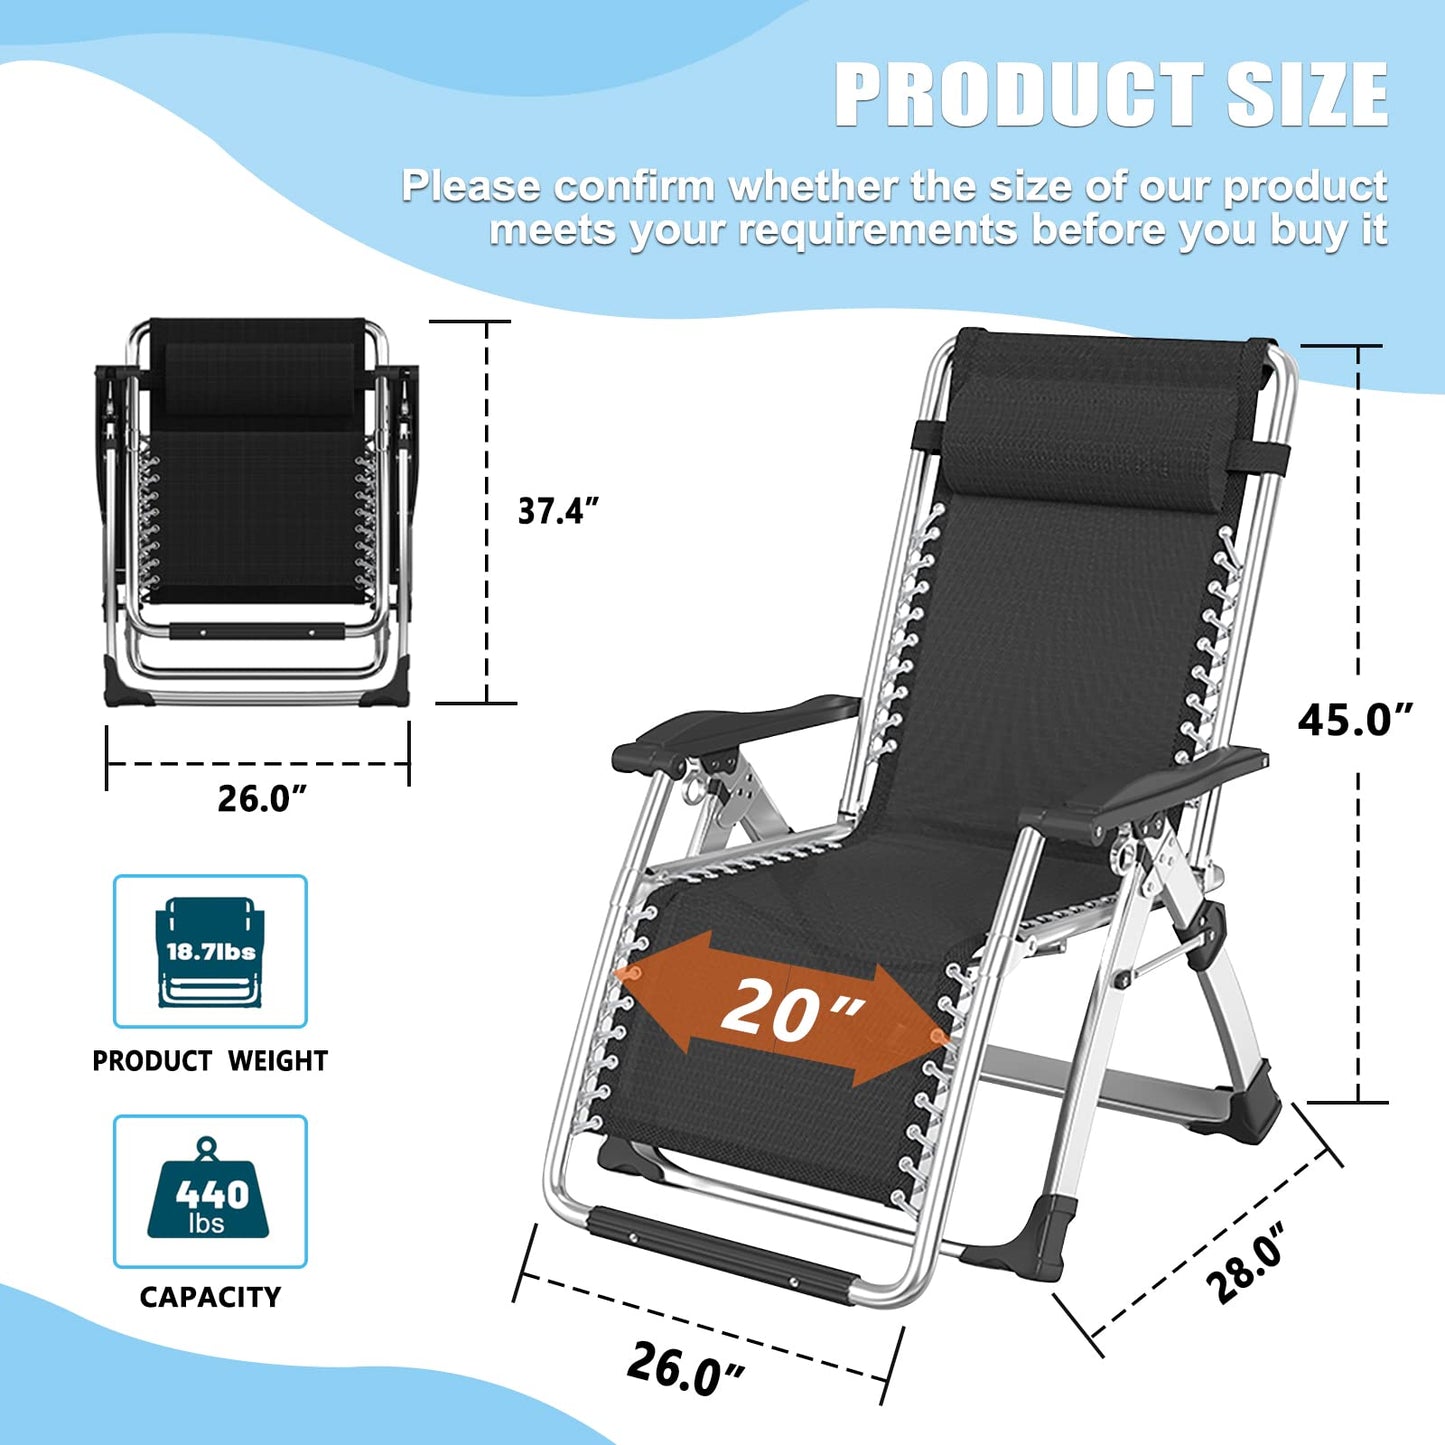 Chaise Zero Gravity, inclinable de pelouse, chaise longue inclinable, chaise longue portable pliante avec coussin doux détachable, porte-gobelet, appuie-tête confortable noir Zero Gravity Chair-2Pack